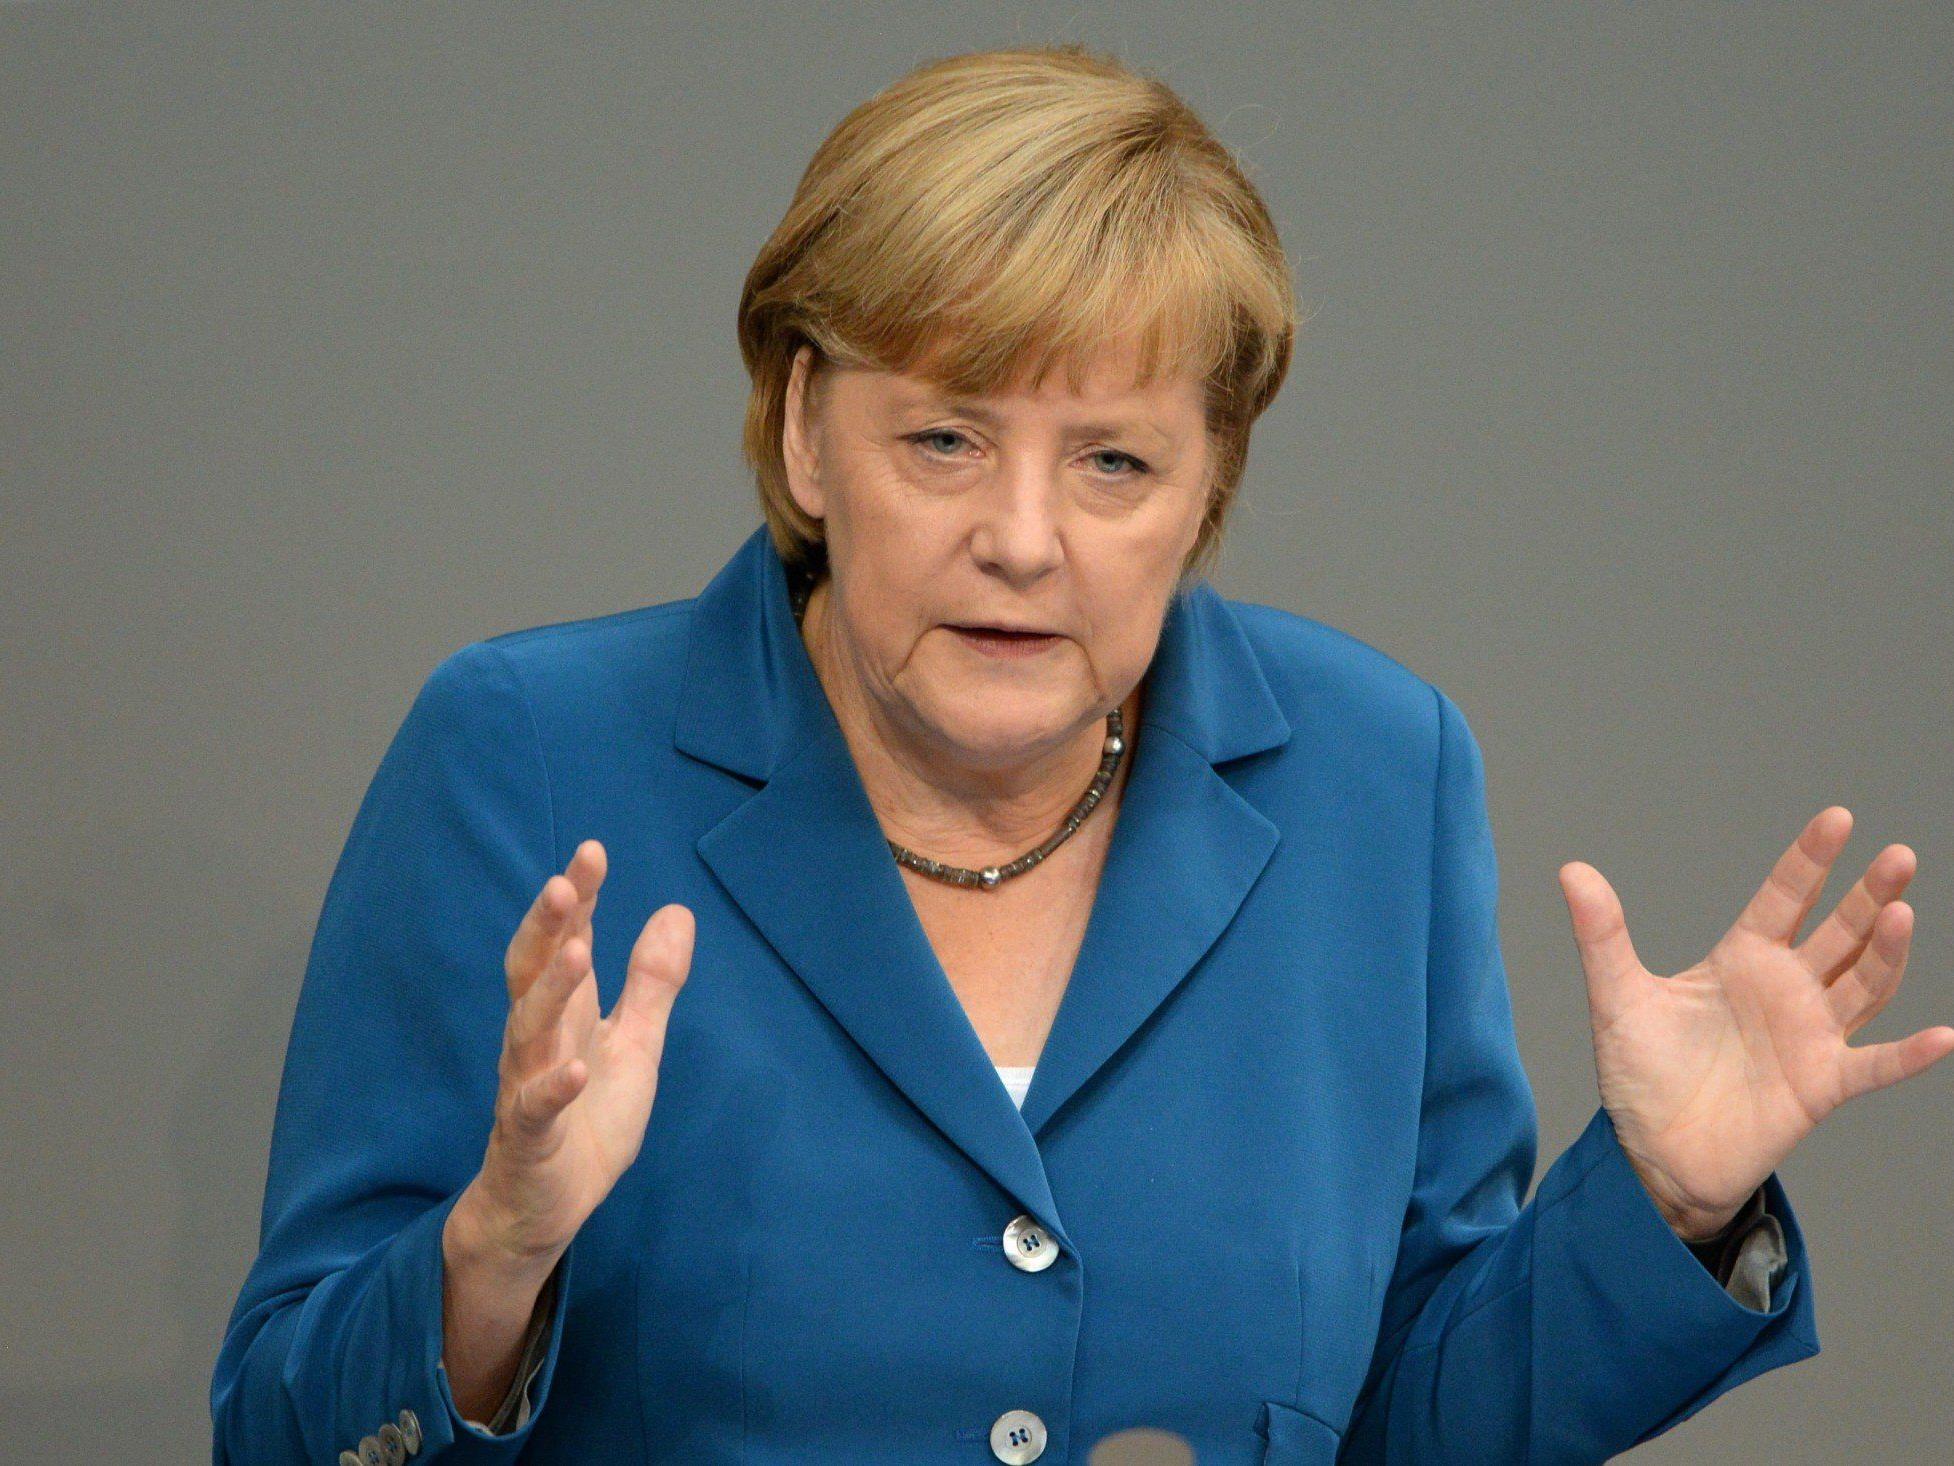 Angela Merkel warnt vor zu hohen Erwartungen an den G-20-Gipfel - die Vetomächte Russland und die USA vertreten verschiedene Standpunkte.